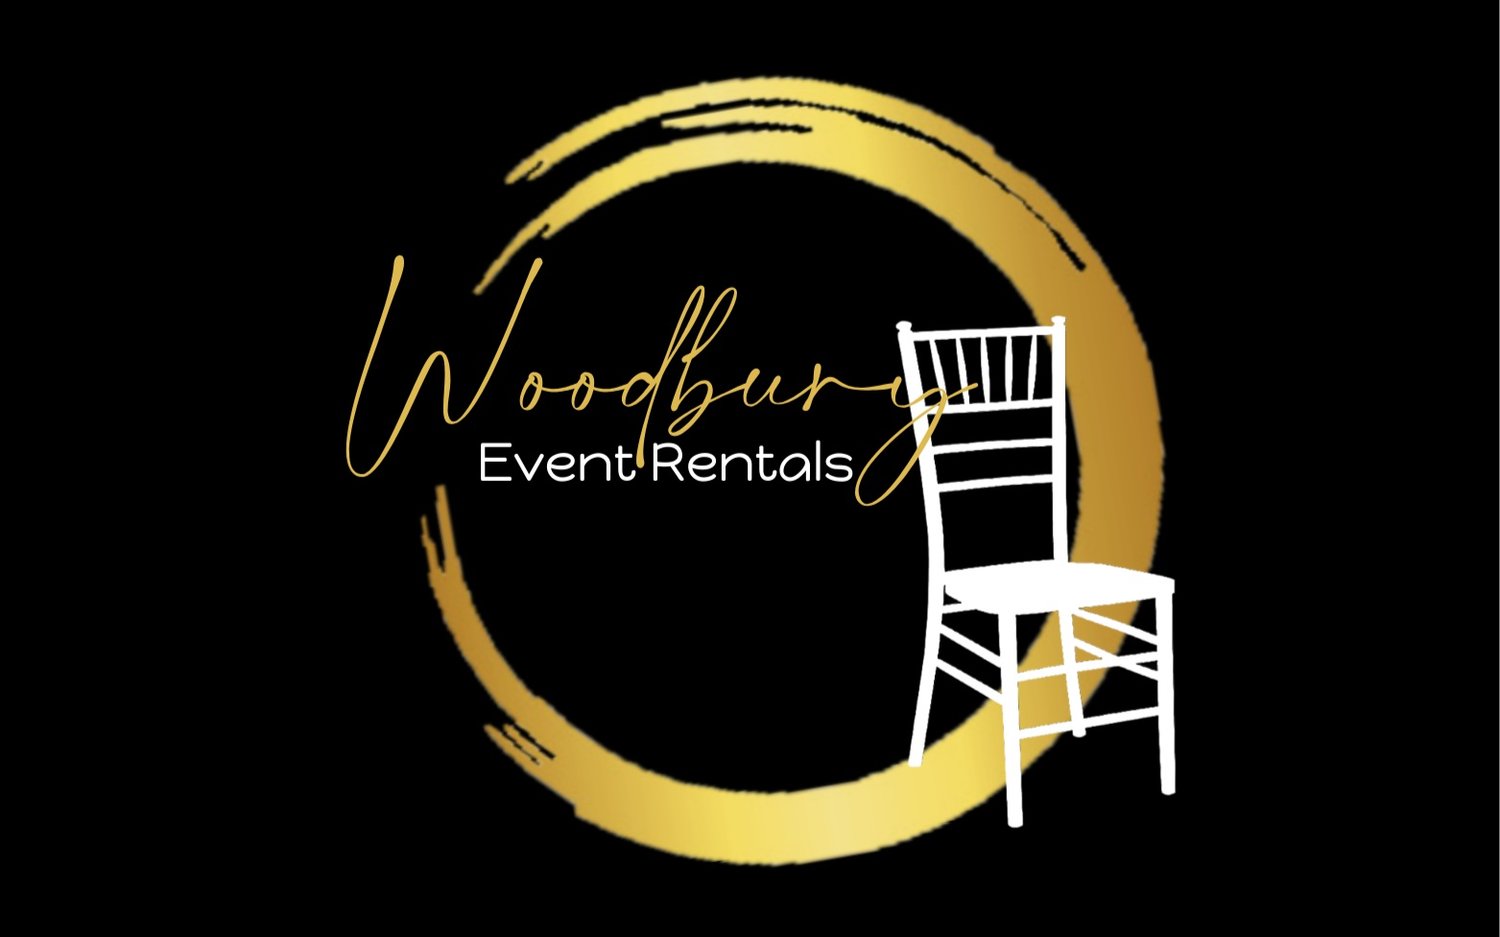 Woodbury Event Rentals